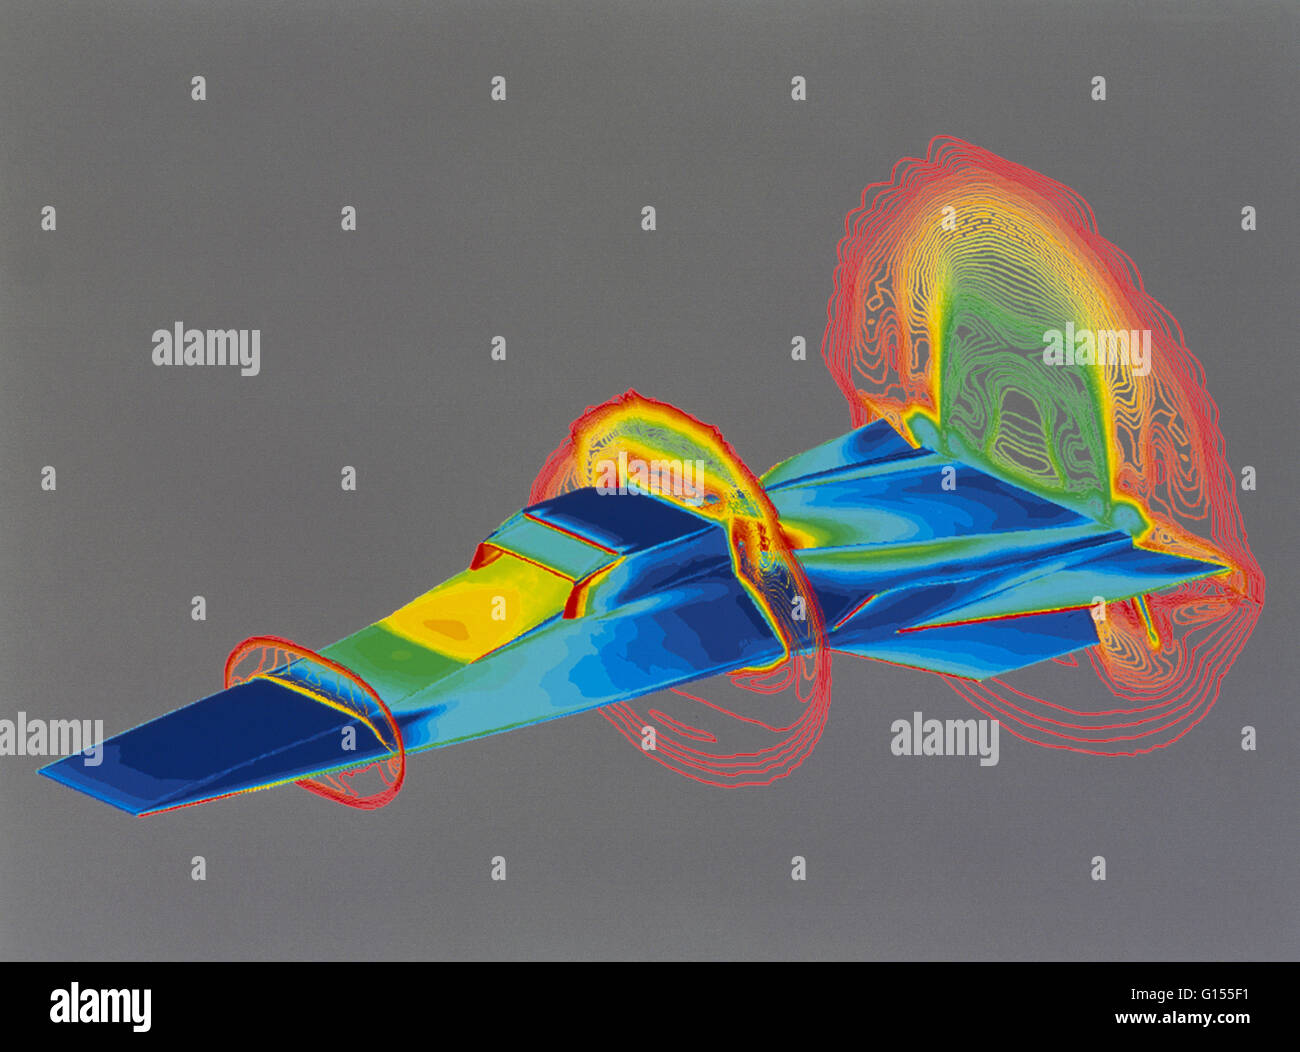 Computer animation della Hyper-X aeromobile il primo aviogetto progettato per volare a più di 5 volte la velocità del suono (Mach 5), prima del lancio. L'aerodinamica di pressioni esercitate su Hyper-X e l'aria intorno ad esso in volo sono codificati per colore dal rosso Foto Stock